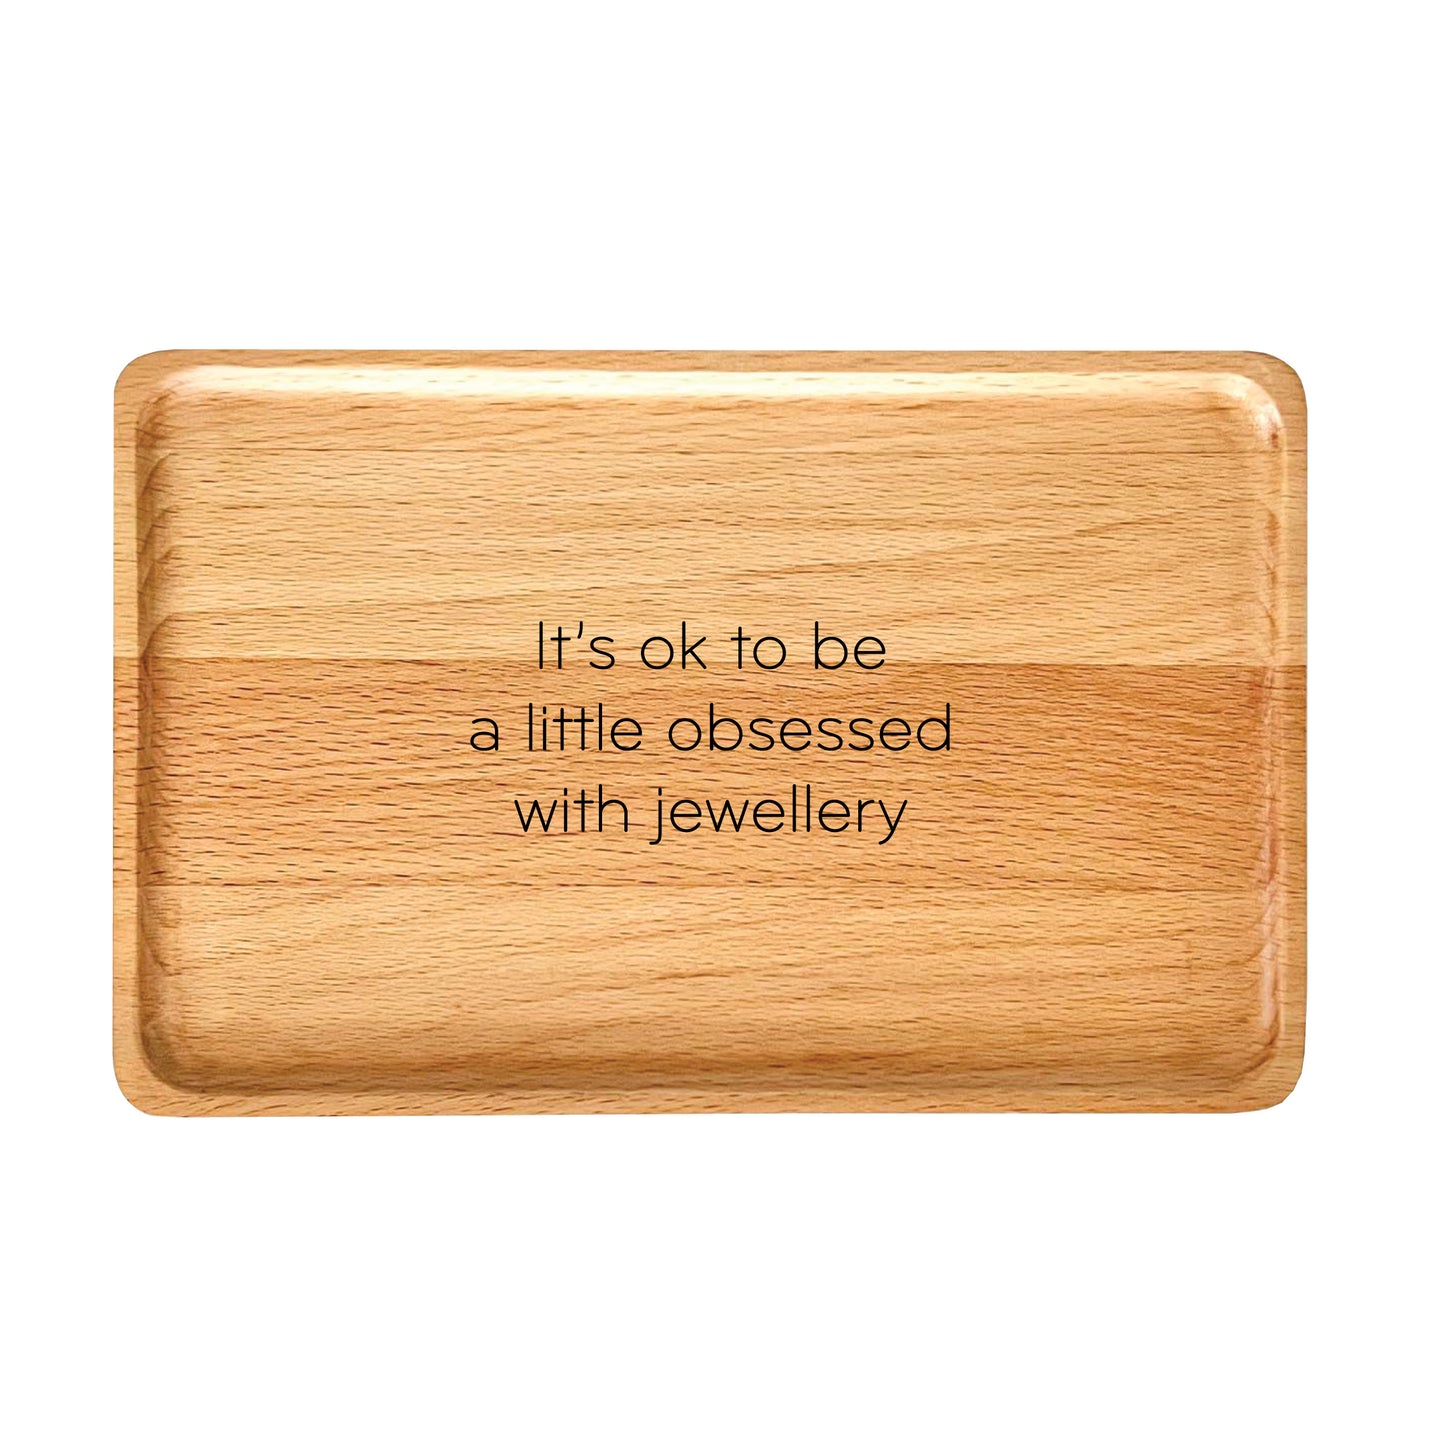 Obsessed with jewellery Jewellery Keepsake Box